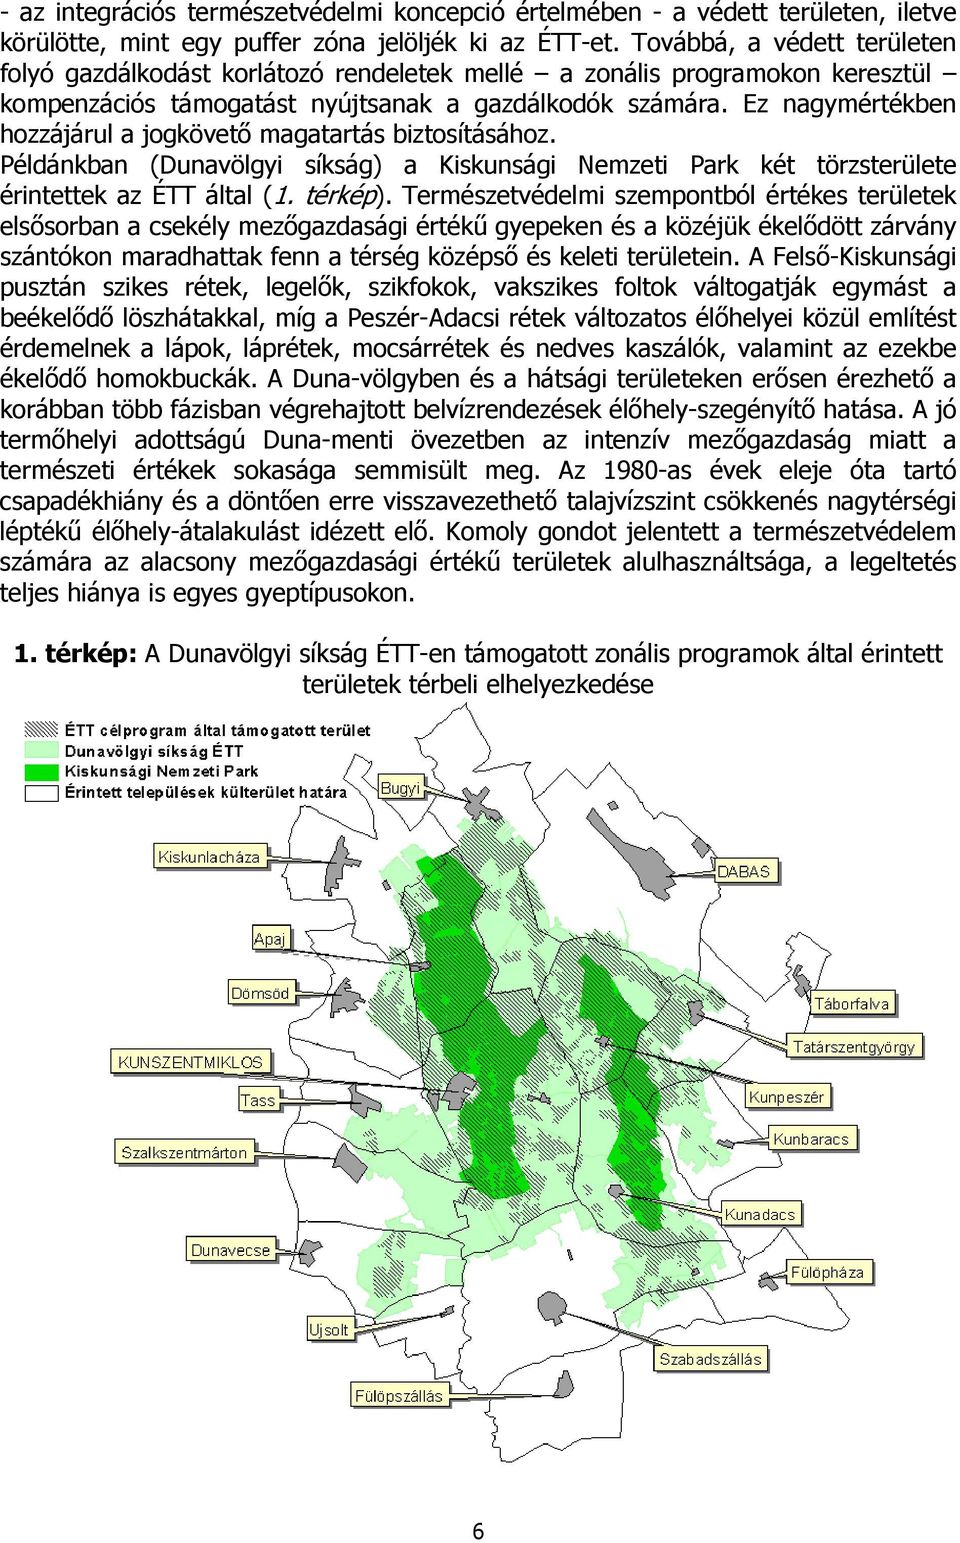 Ez nagymértékben hozzájárul a jogkövető magatartás biztosításához. Példánkban (Dunavölgyi síkság) a Kiskunsági Nemzeti Park két törzsterülete érintettek az ÉTT által (1. térkép).